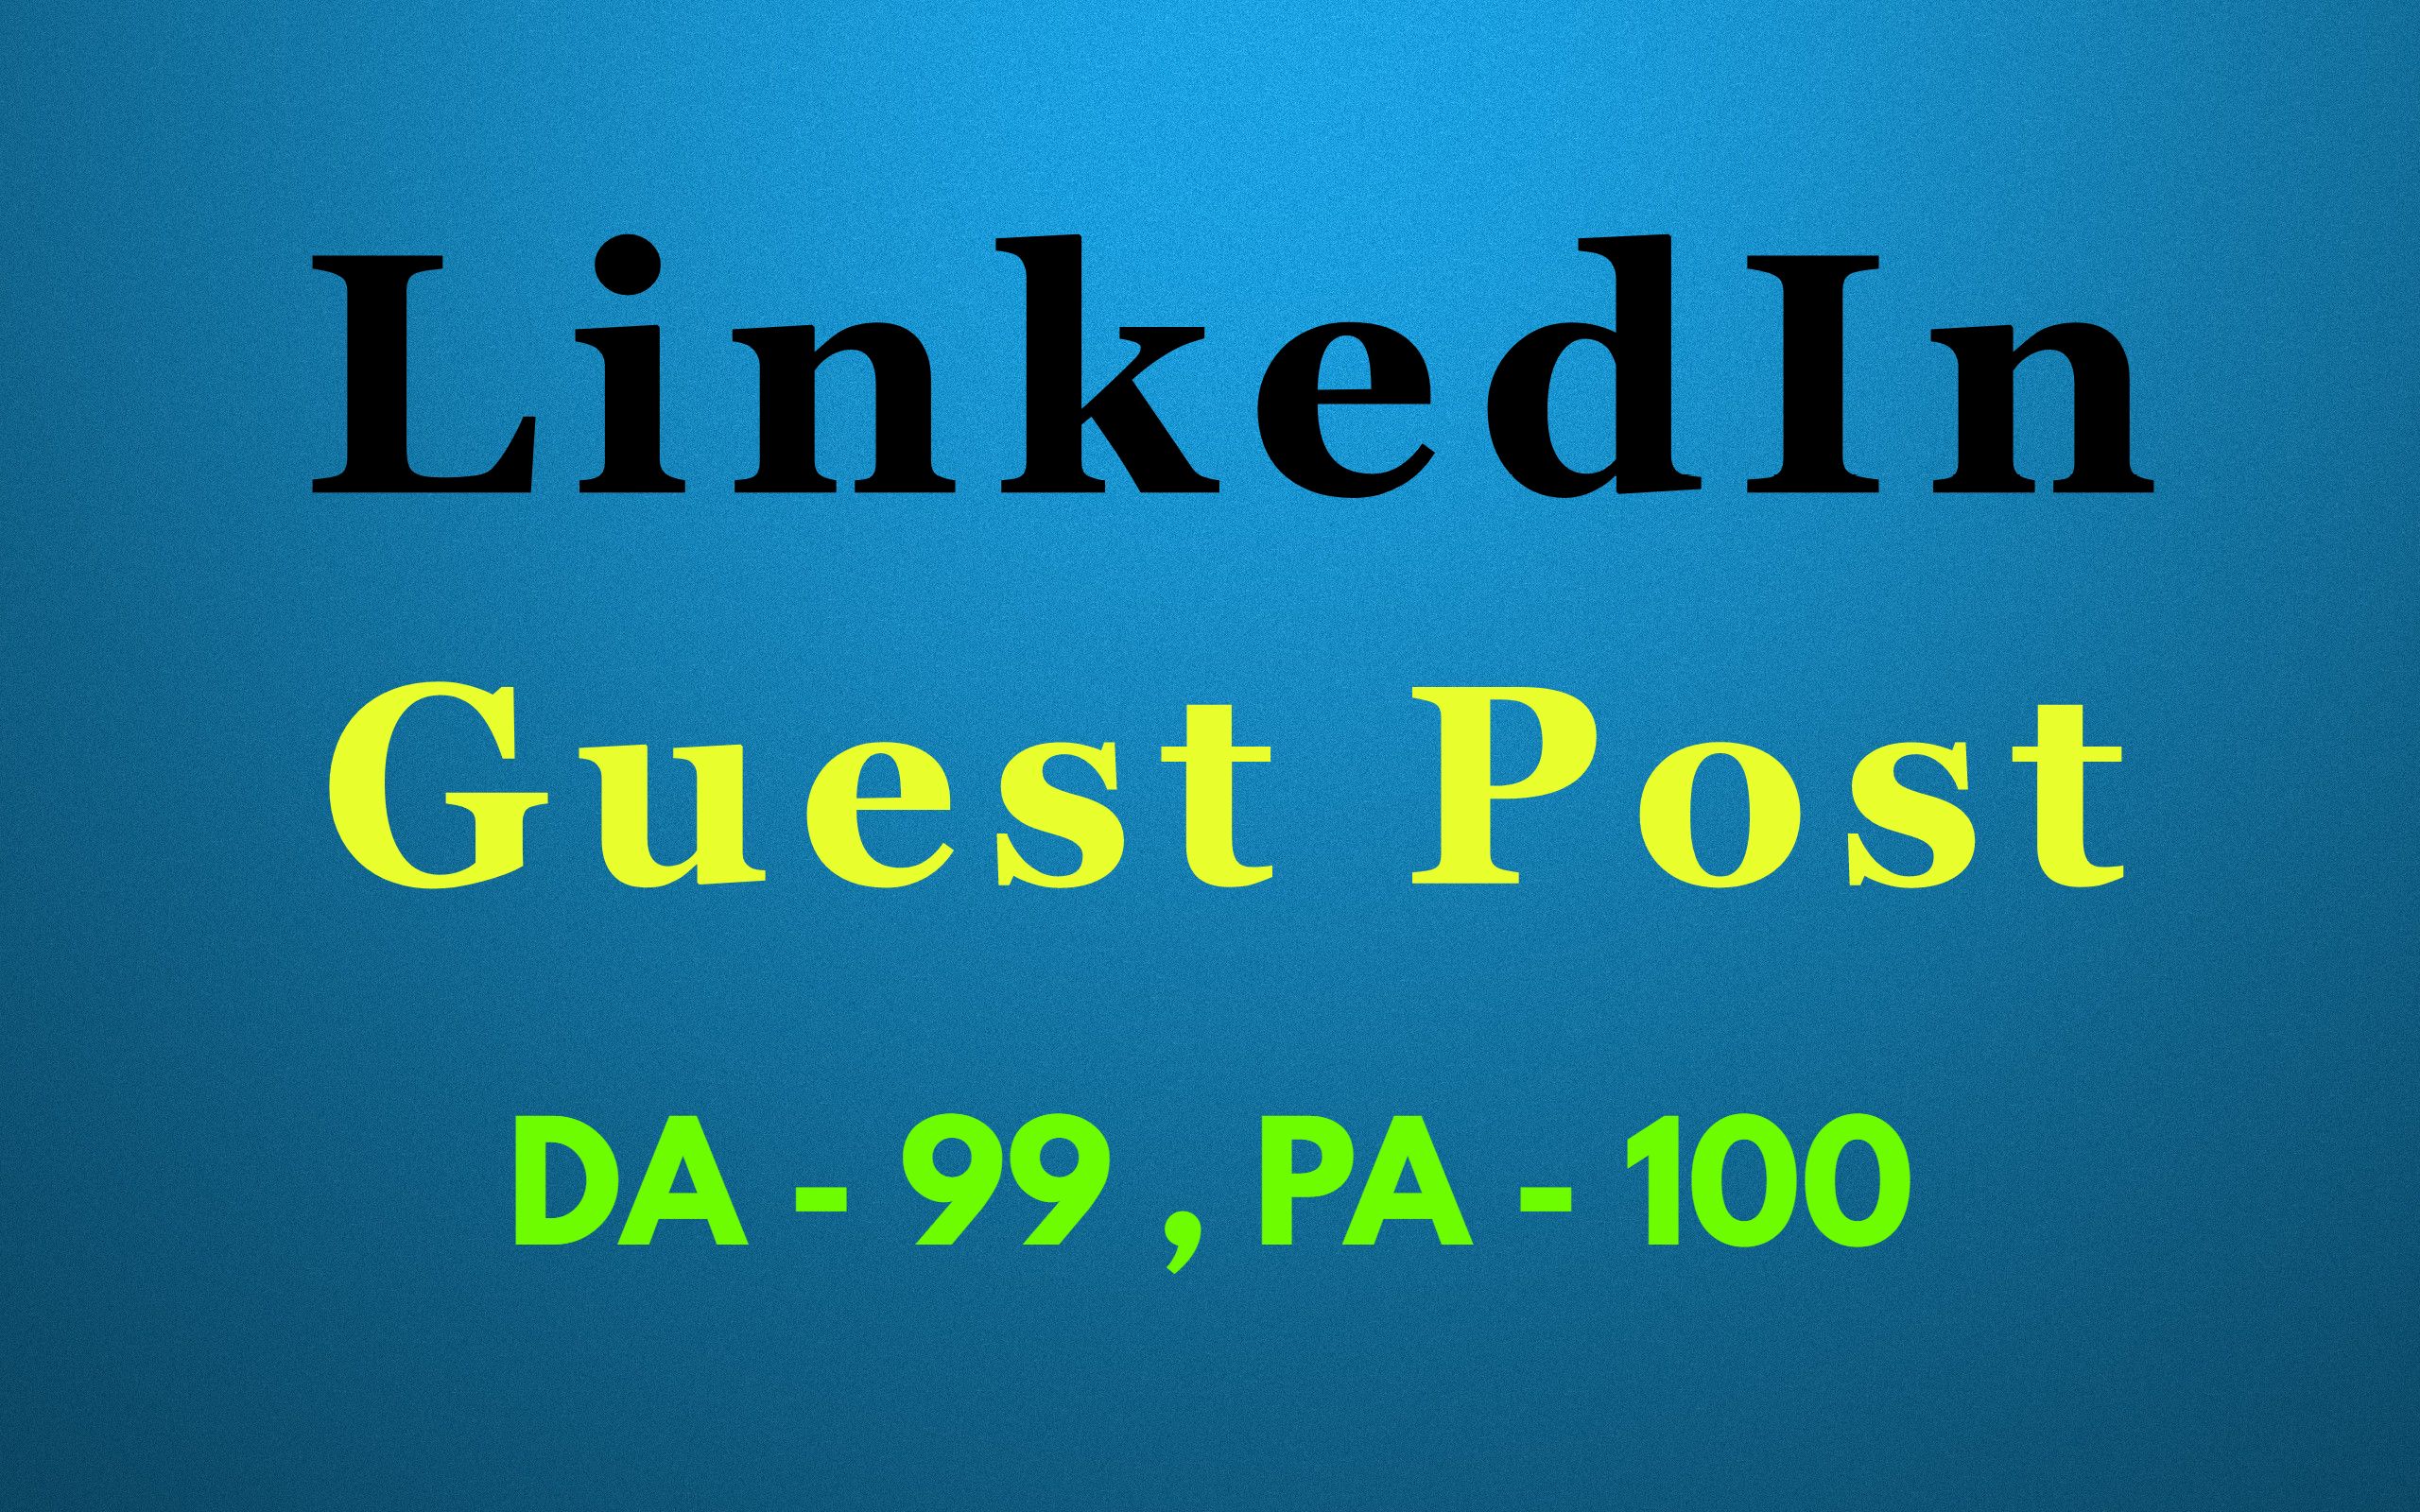 Guest post on LinkedIn DA 99 - Dofollow Backlinks - Press Release